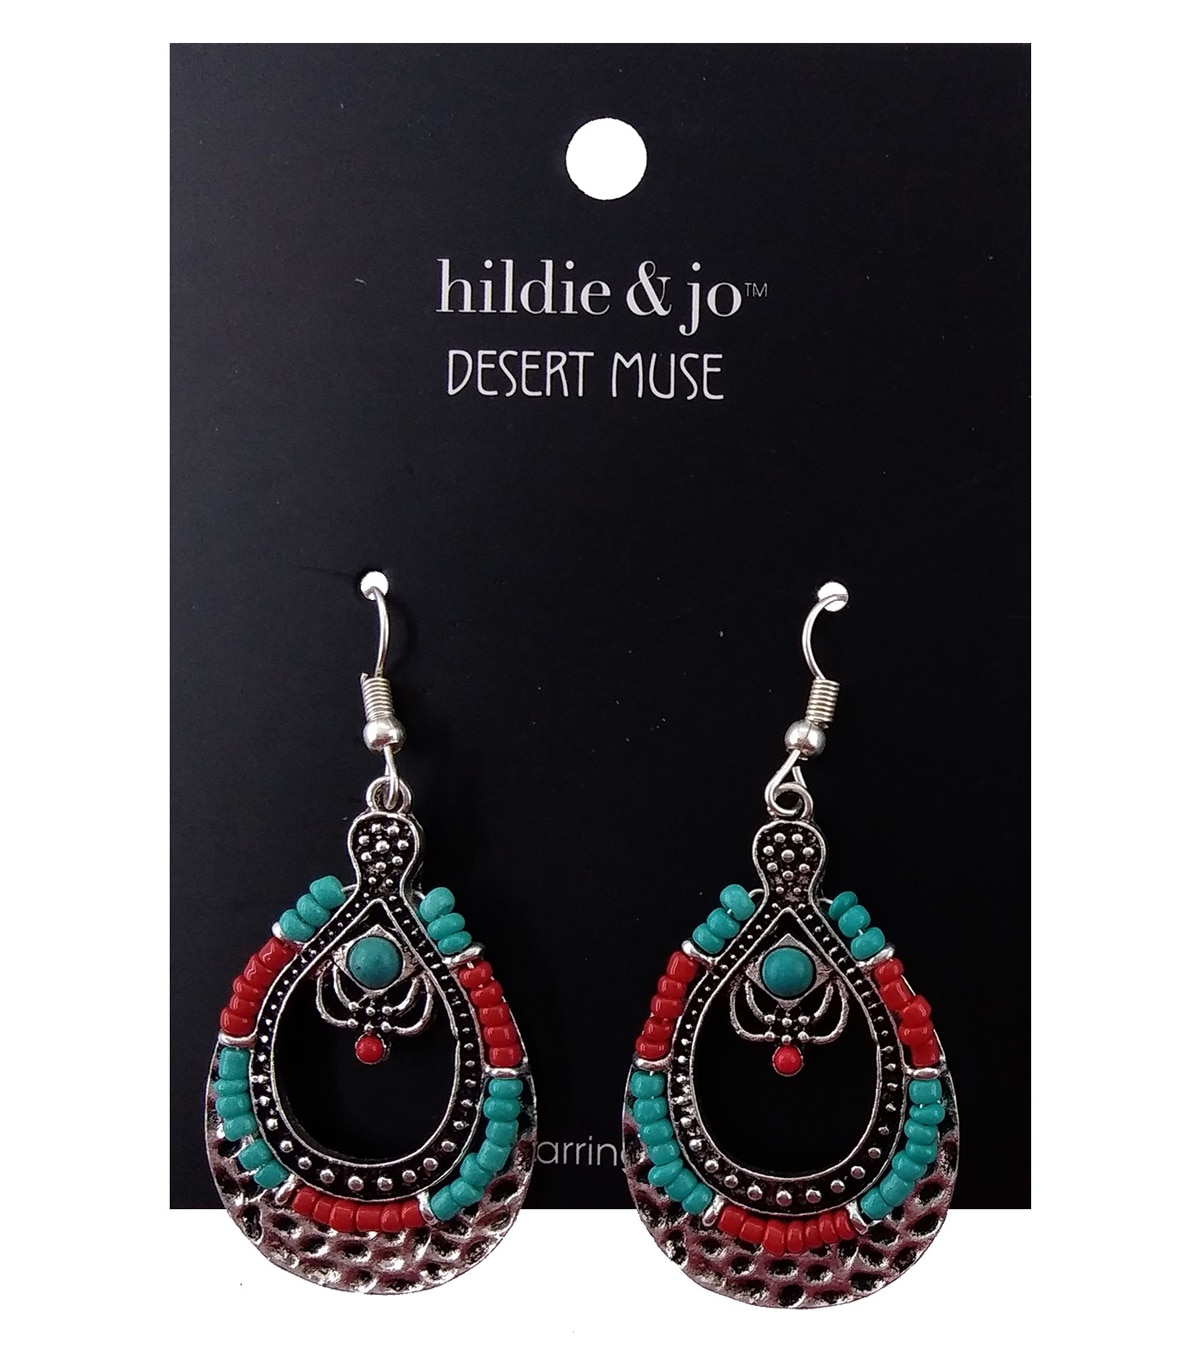 hildie & jo San Teardrop Turquoise and Red Bead Earrings ...